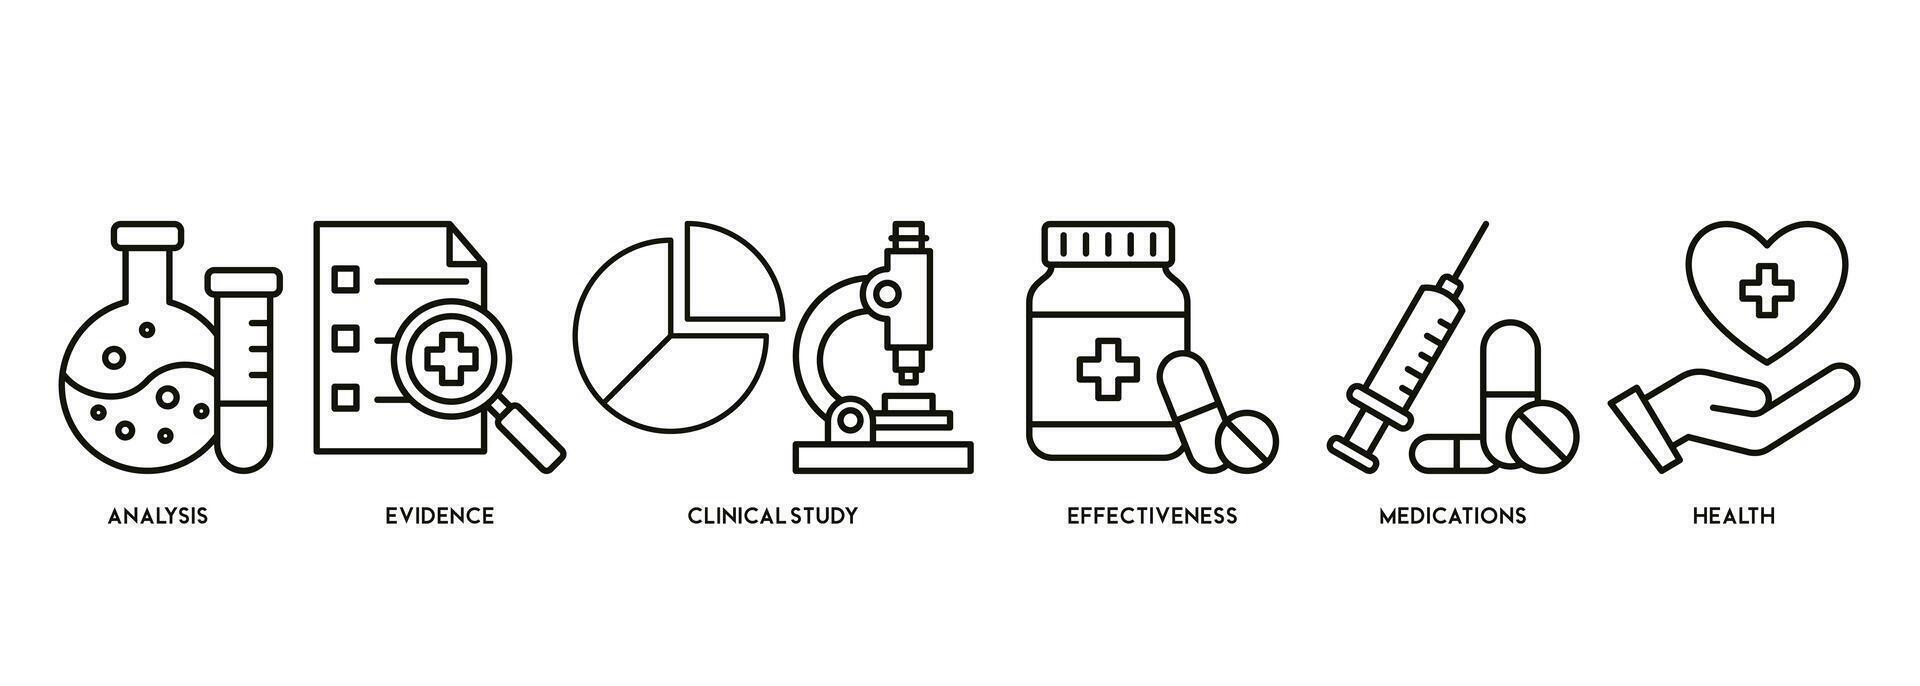 bannière de clinique recherche vecteur illustration concept pictogramme avec le icône de analyse, preuve, clinique étude, efficacité, des médicaments